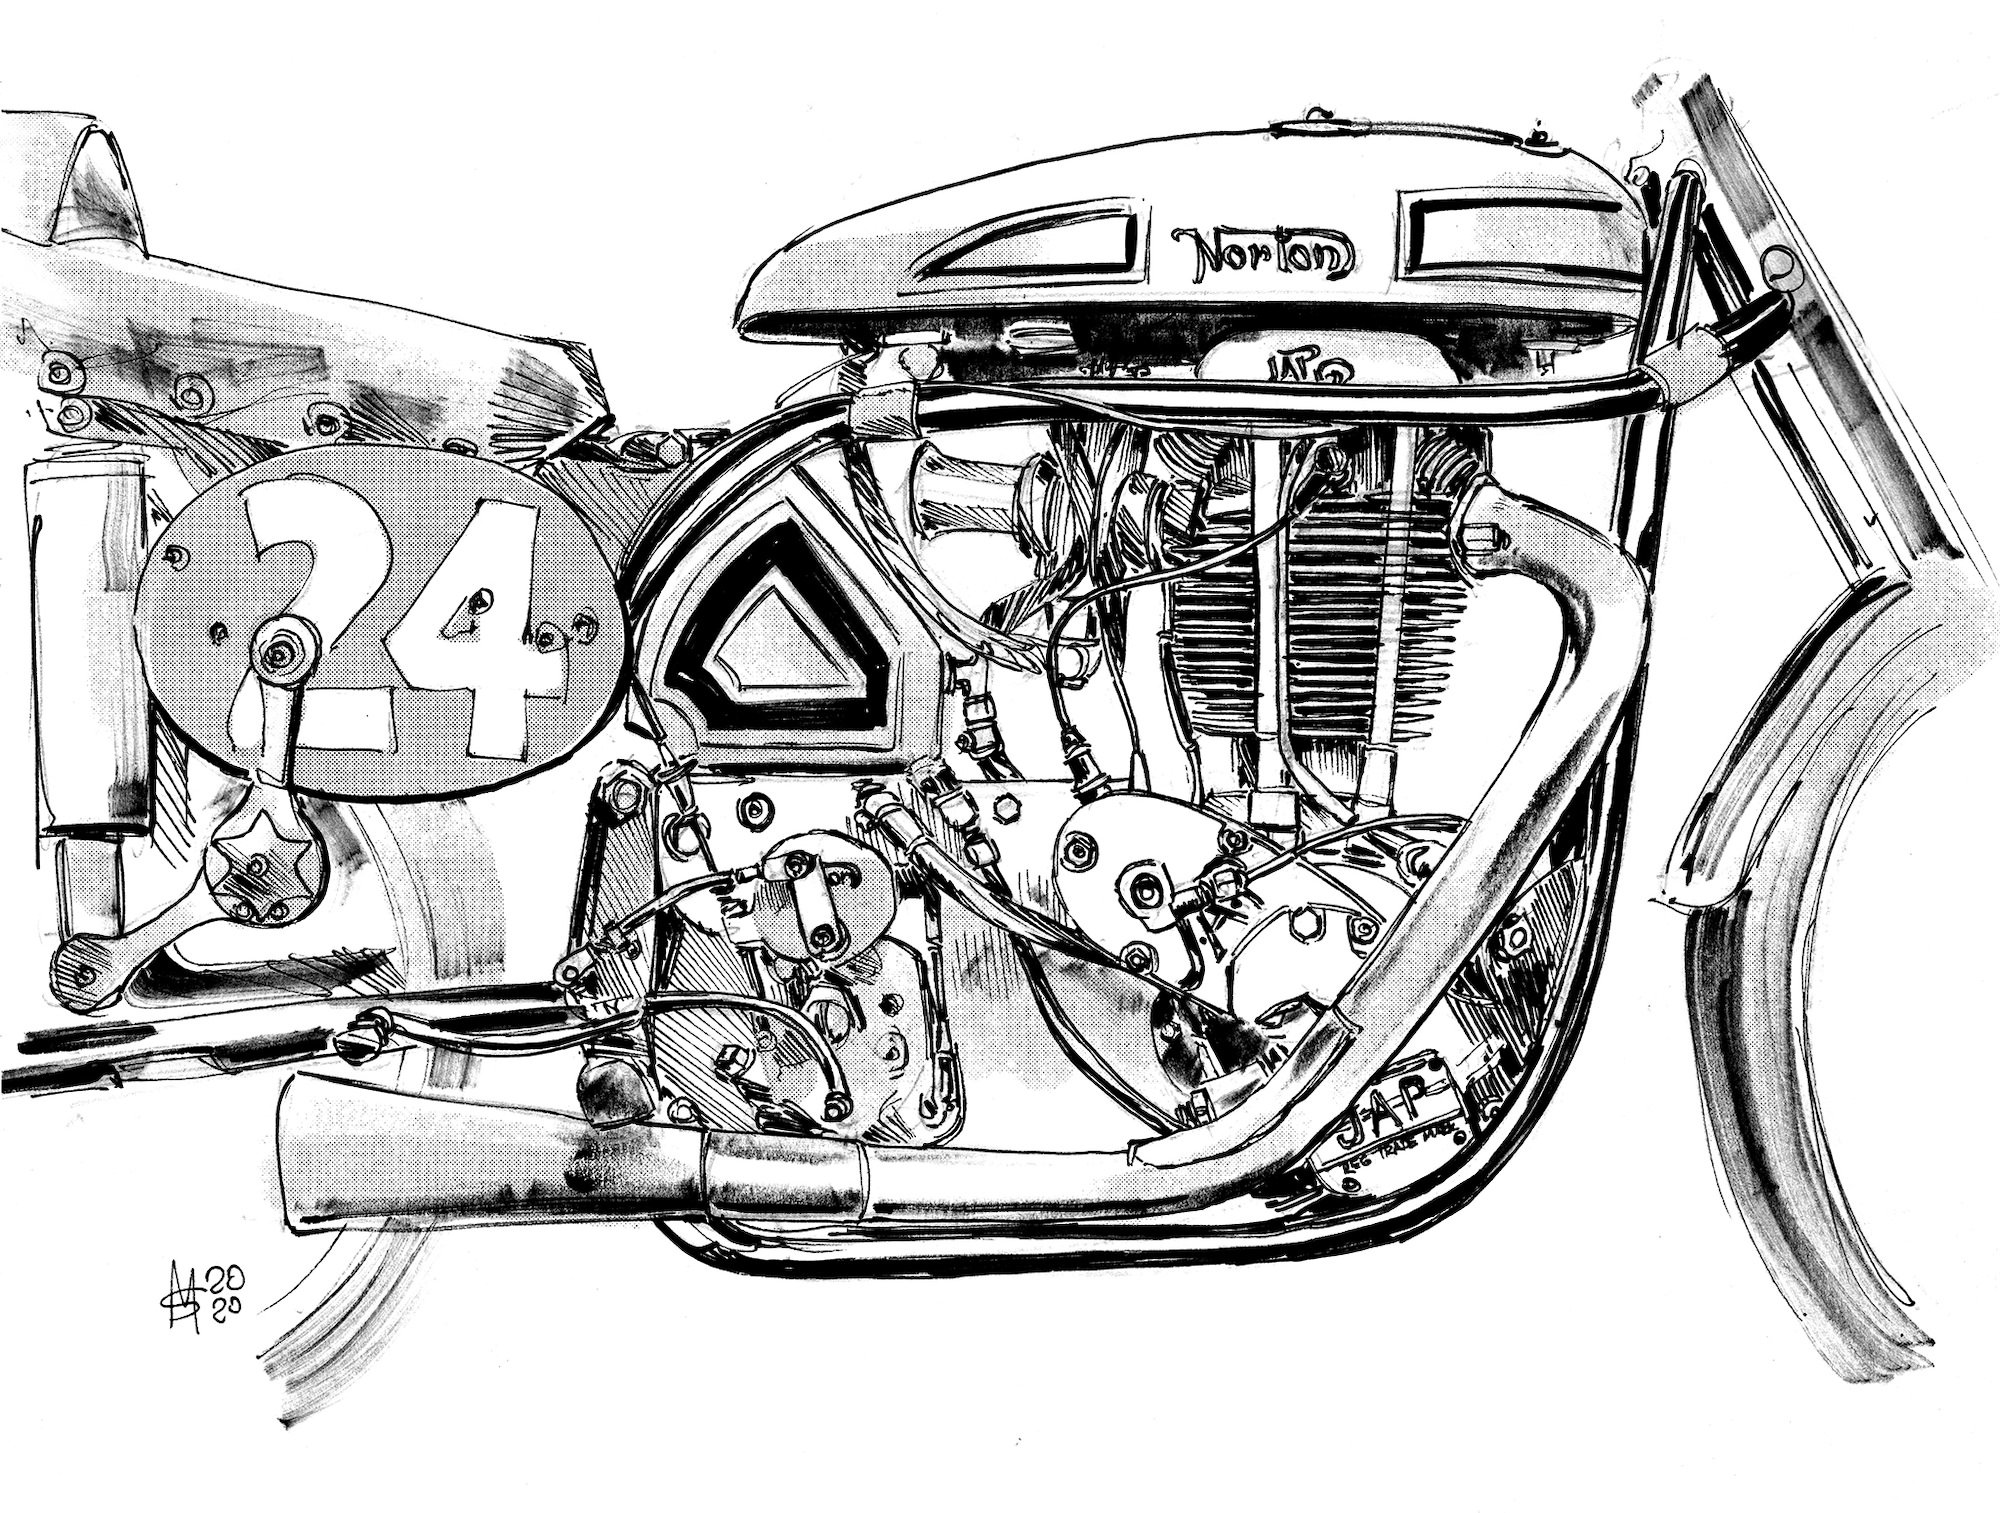 Motorcycle Specials Presents: E.A. Barrett’s Phoenix-JAPs